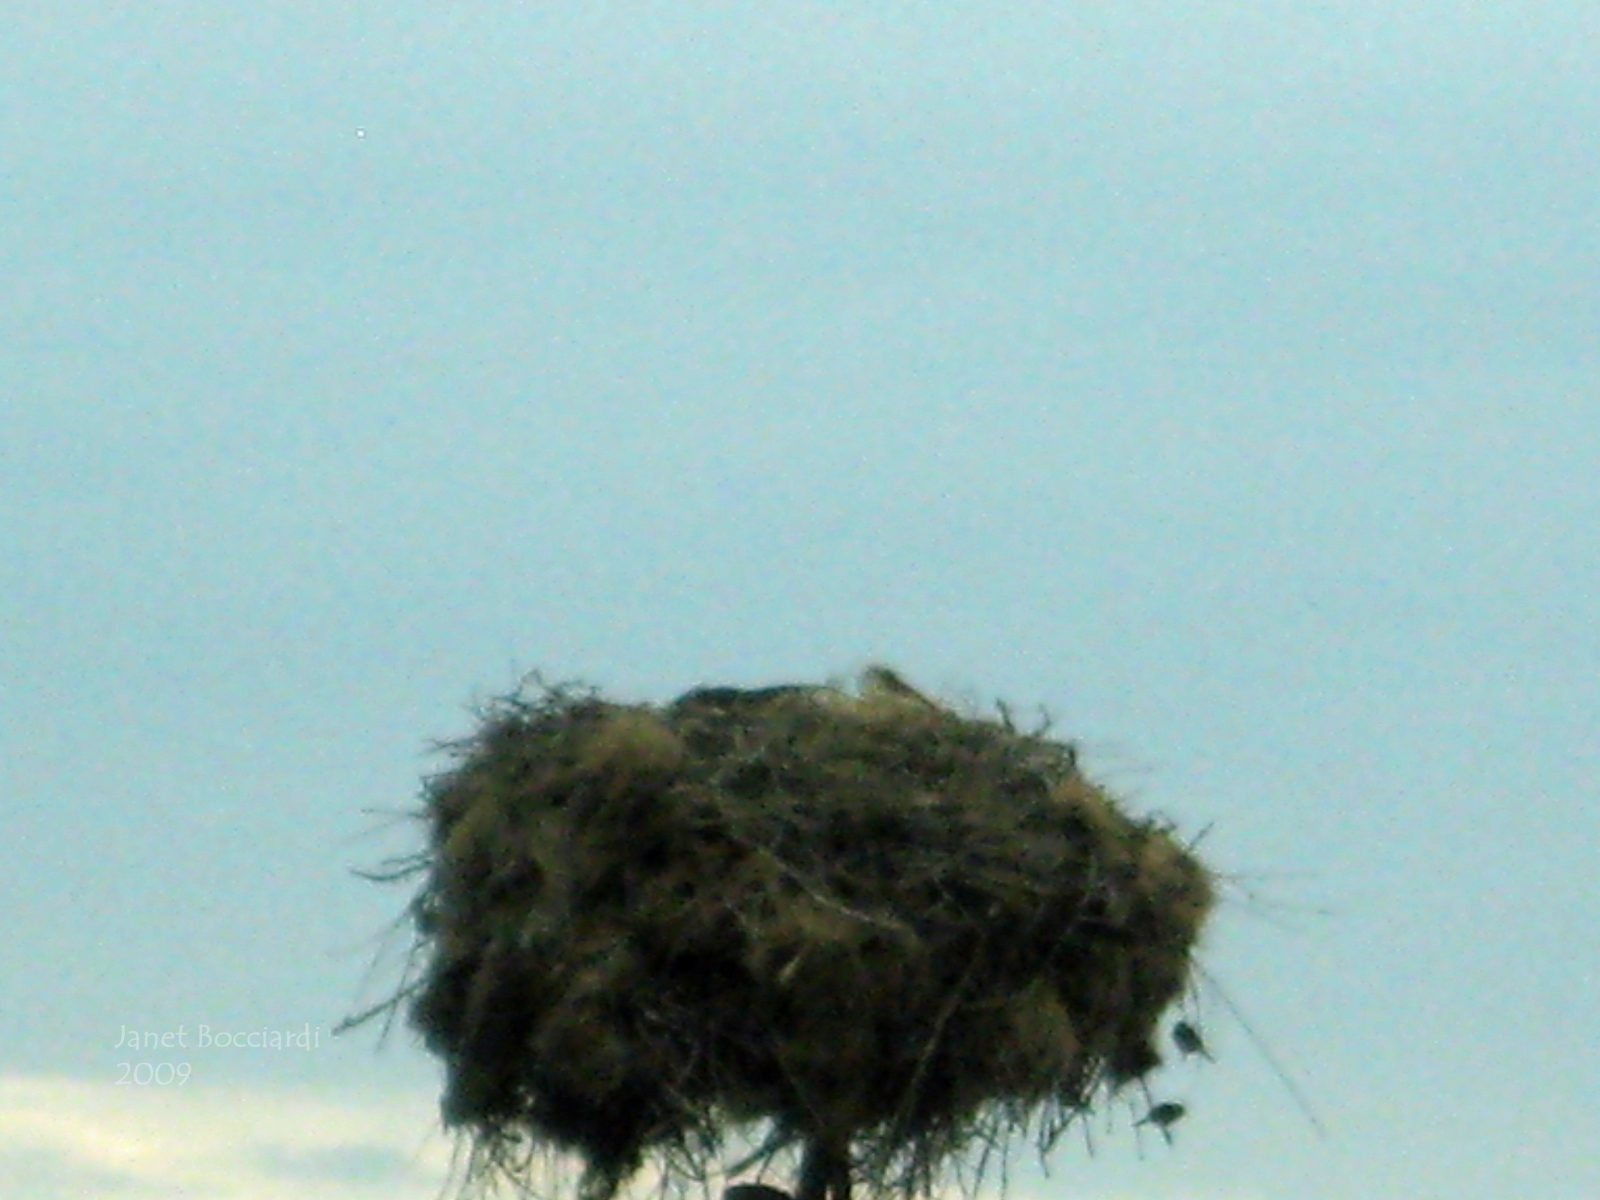 Stork nest, Bulgaria